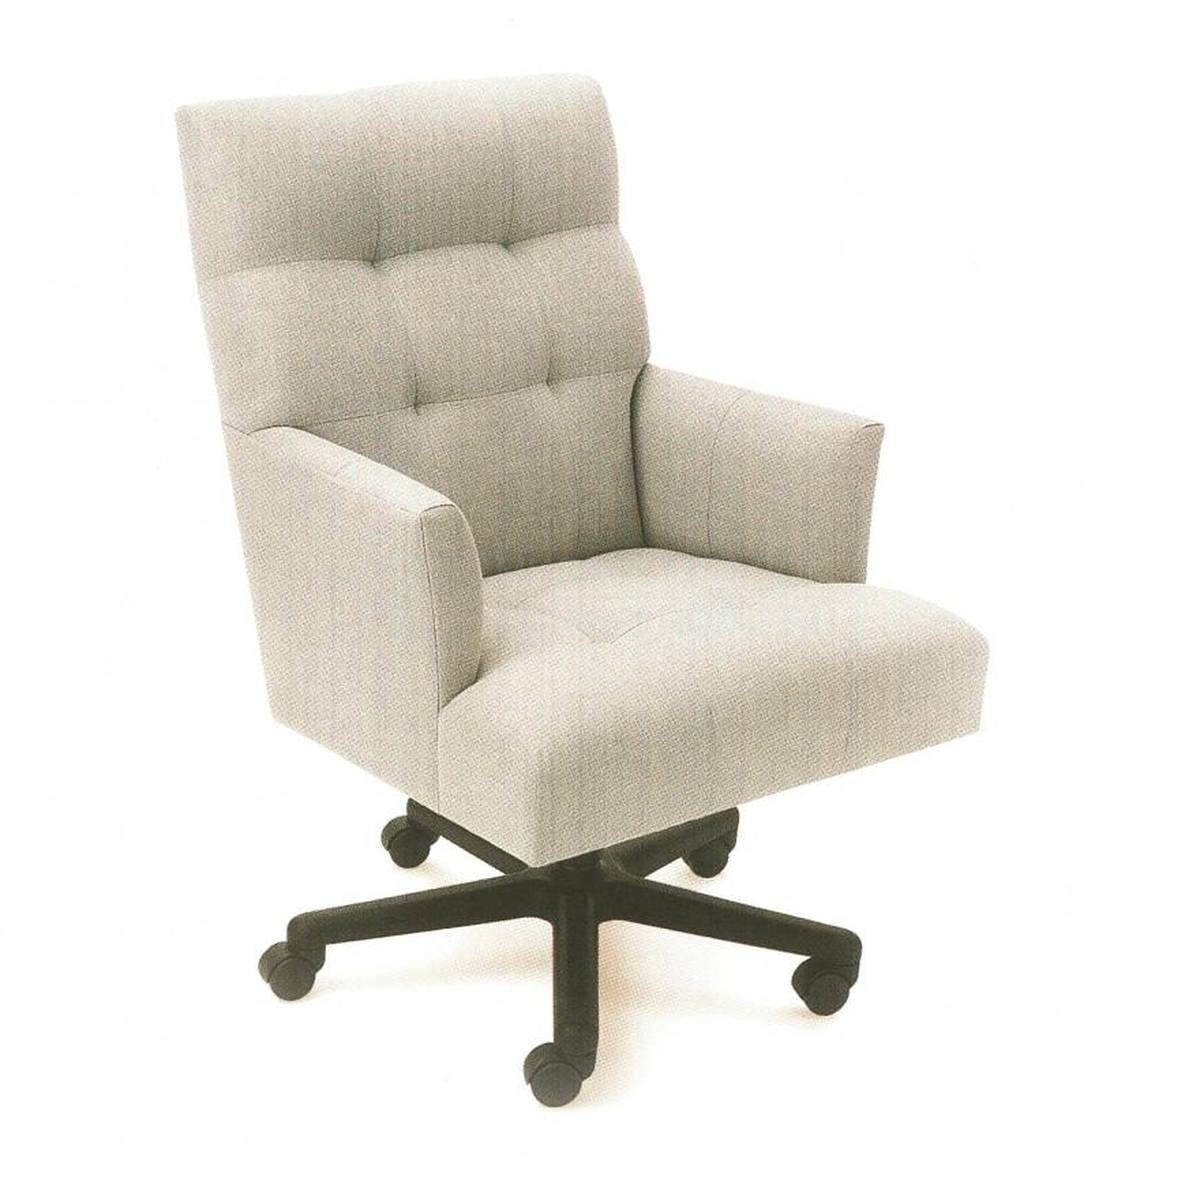 Рабочее кресло Eaton Swivel из Италии фабрики RUBELLI Casa